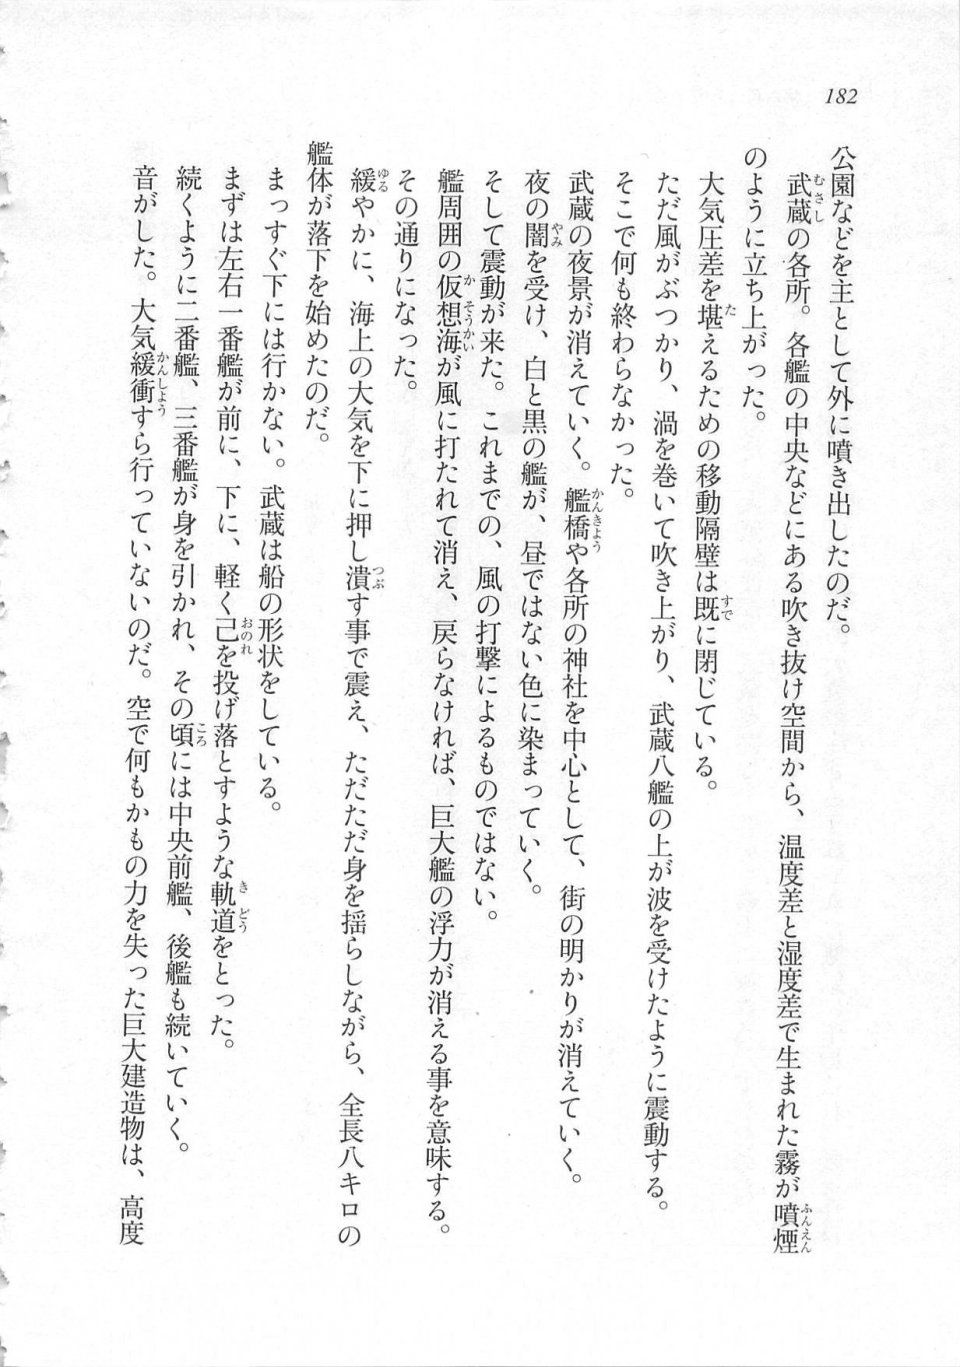 Kyoukai Senjou no Horizon LN Sidestory Vol 3 - Photo #186